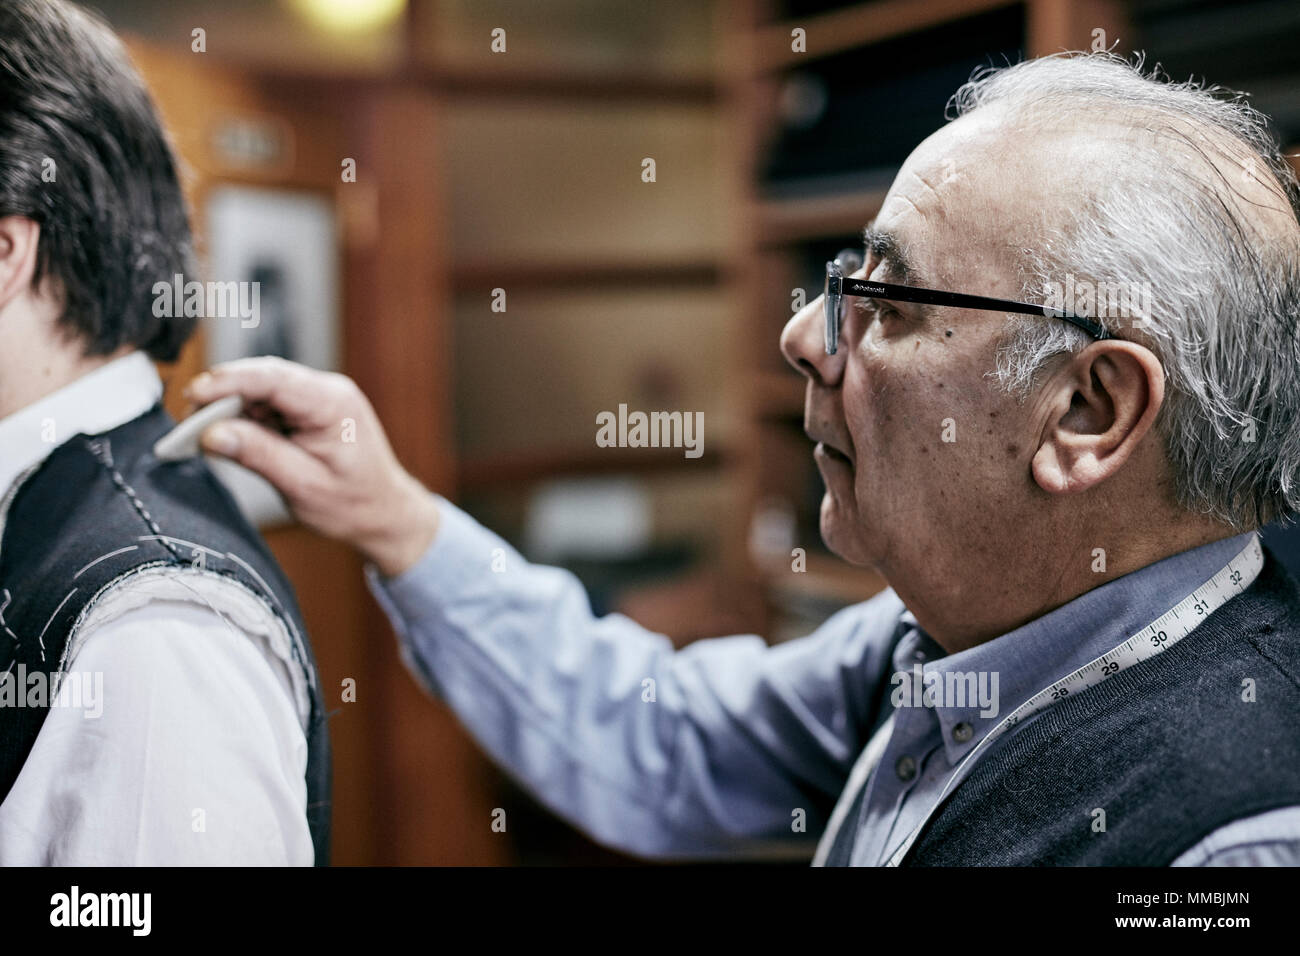 Raccord sur mesure une veste sur un client à l'aide de craie de tailleur pour marquer le tissu mature man cheveux gris Couture sur mesure client lunettes Banque D'Images